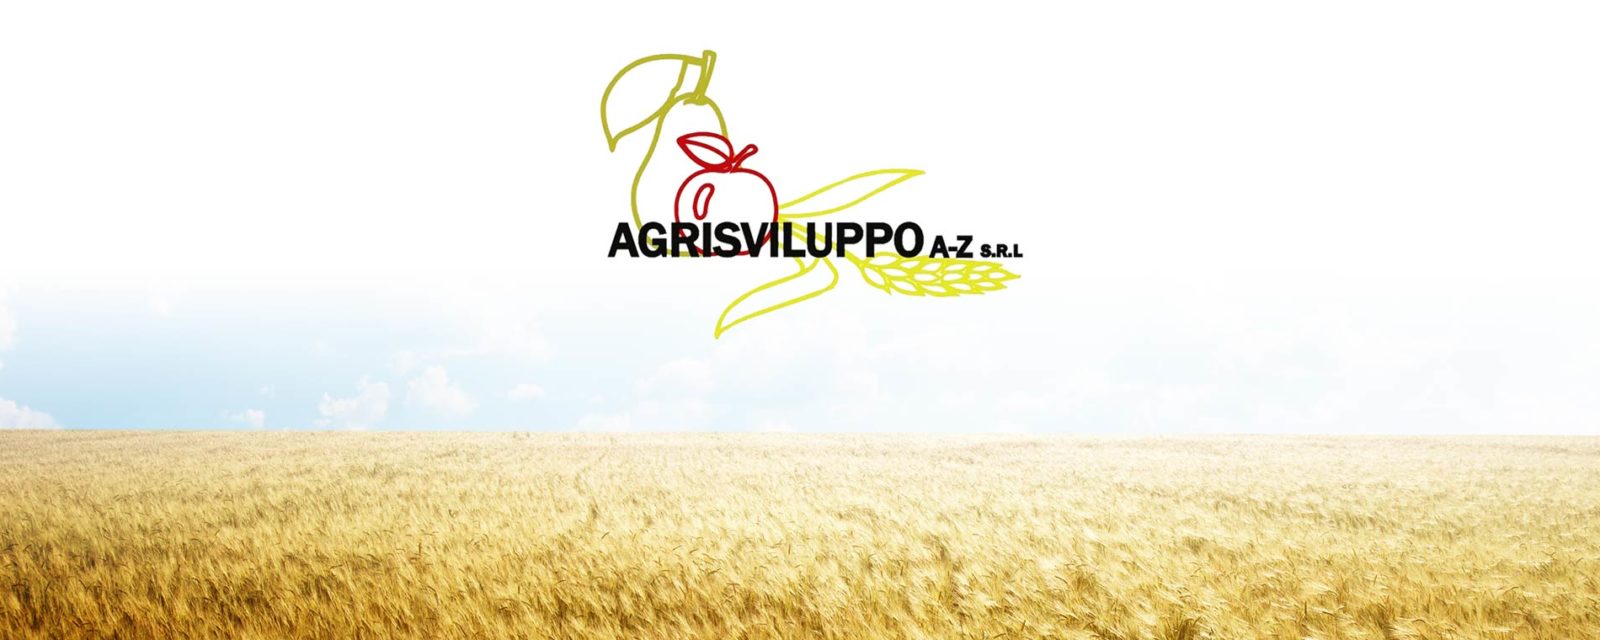 agrisviluppo-banner2